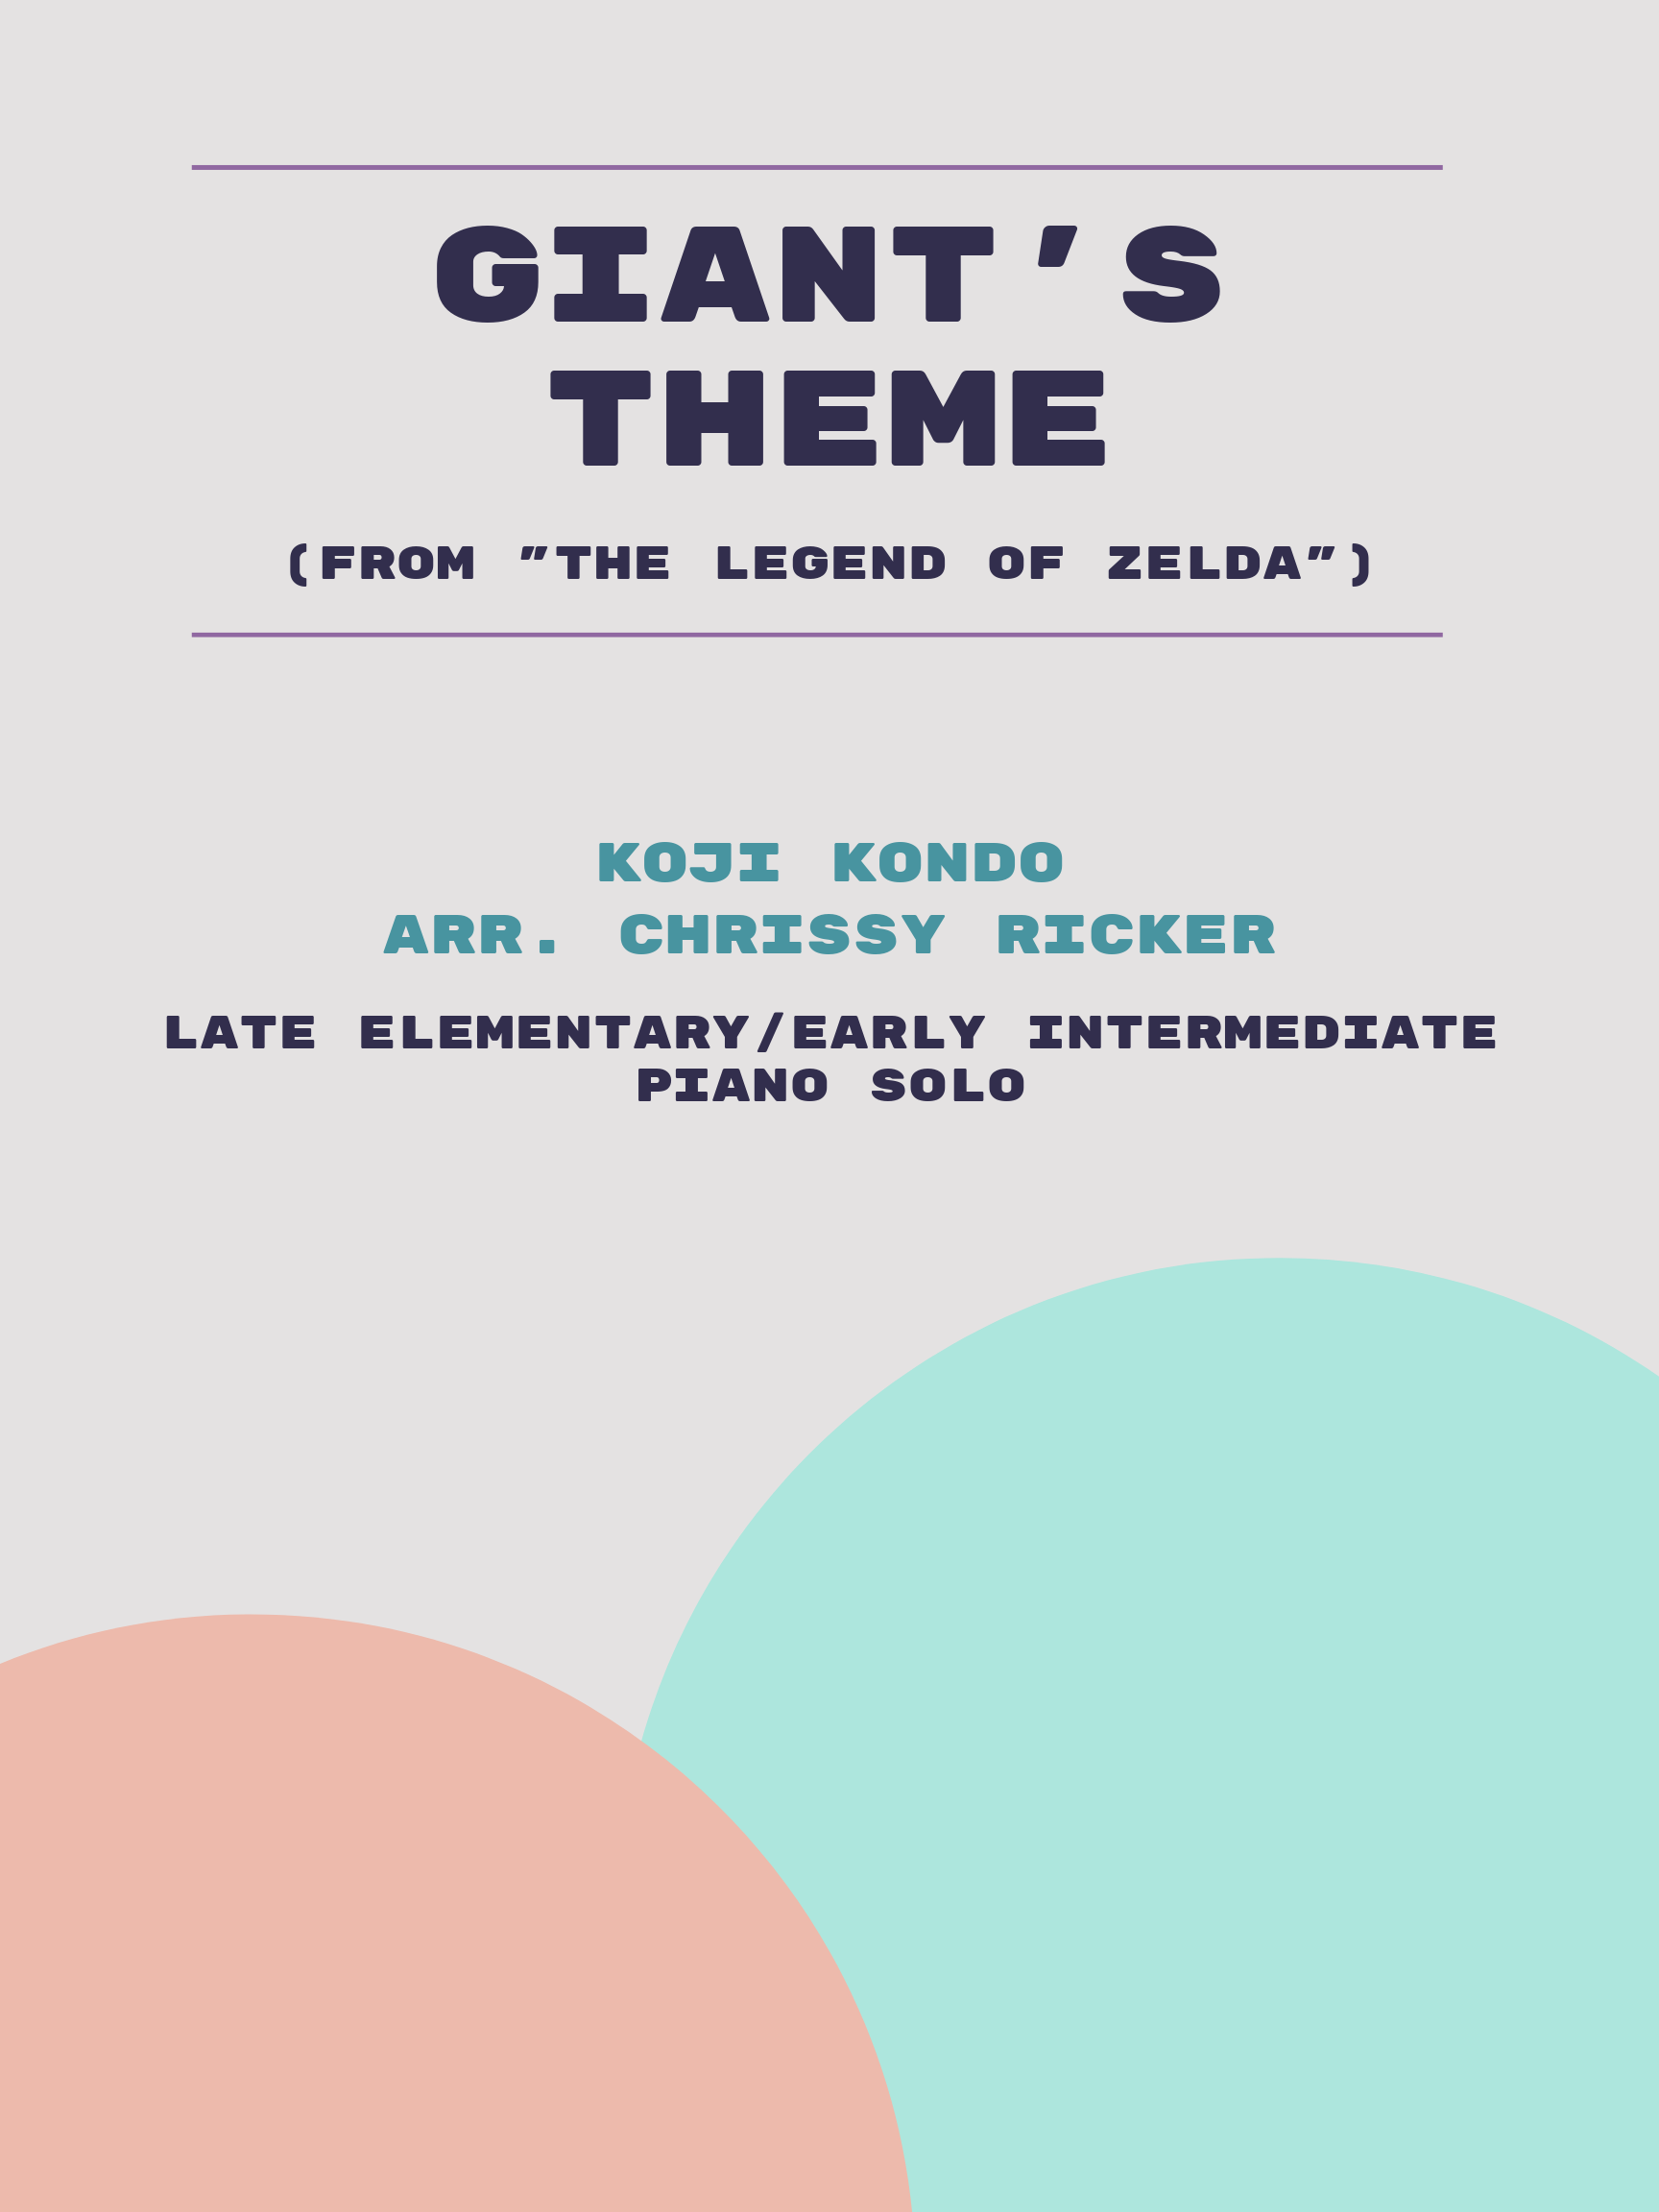 Giant's Theme by Koji Kondo